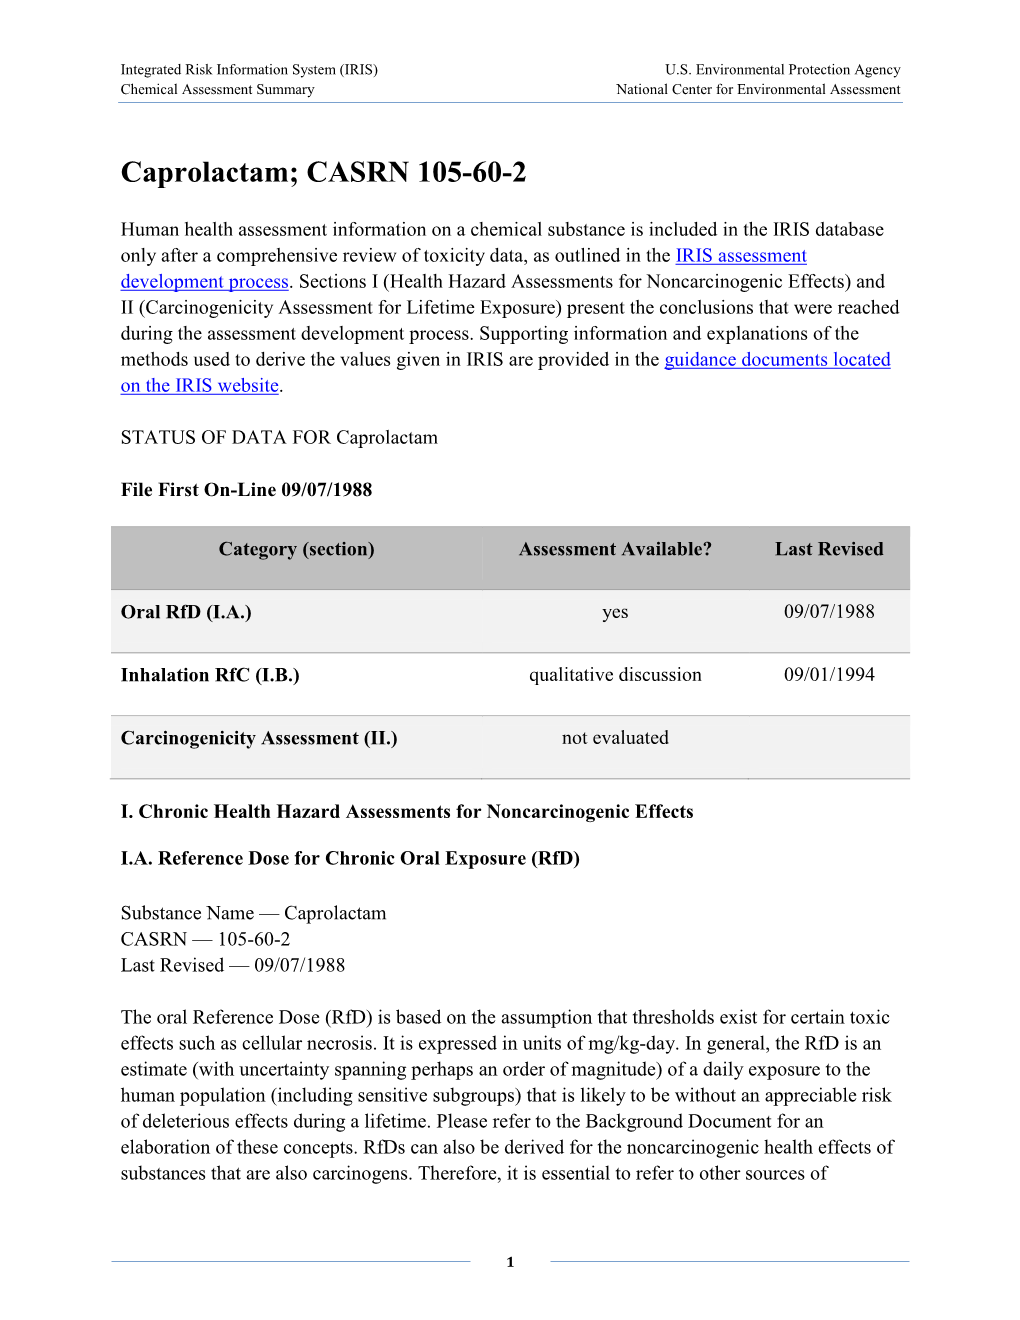 Caprolactam (CASRN 105-60-2) | IRIS | US